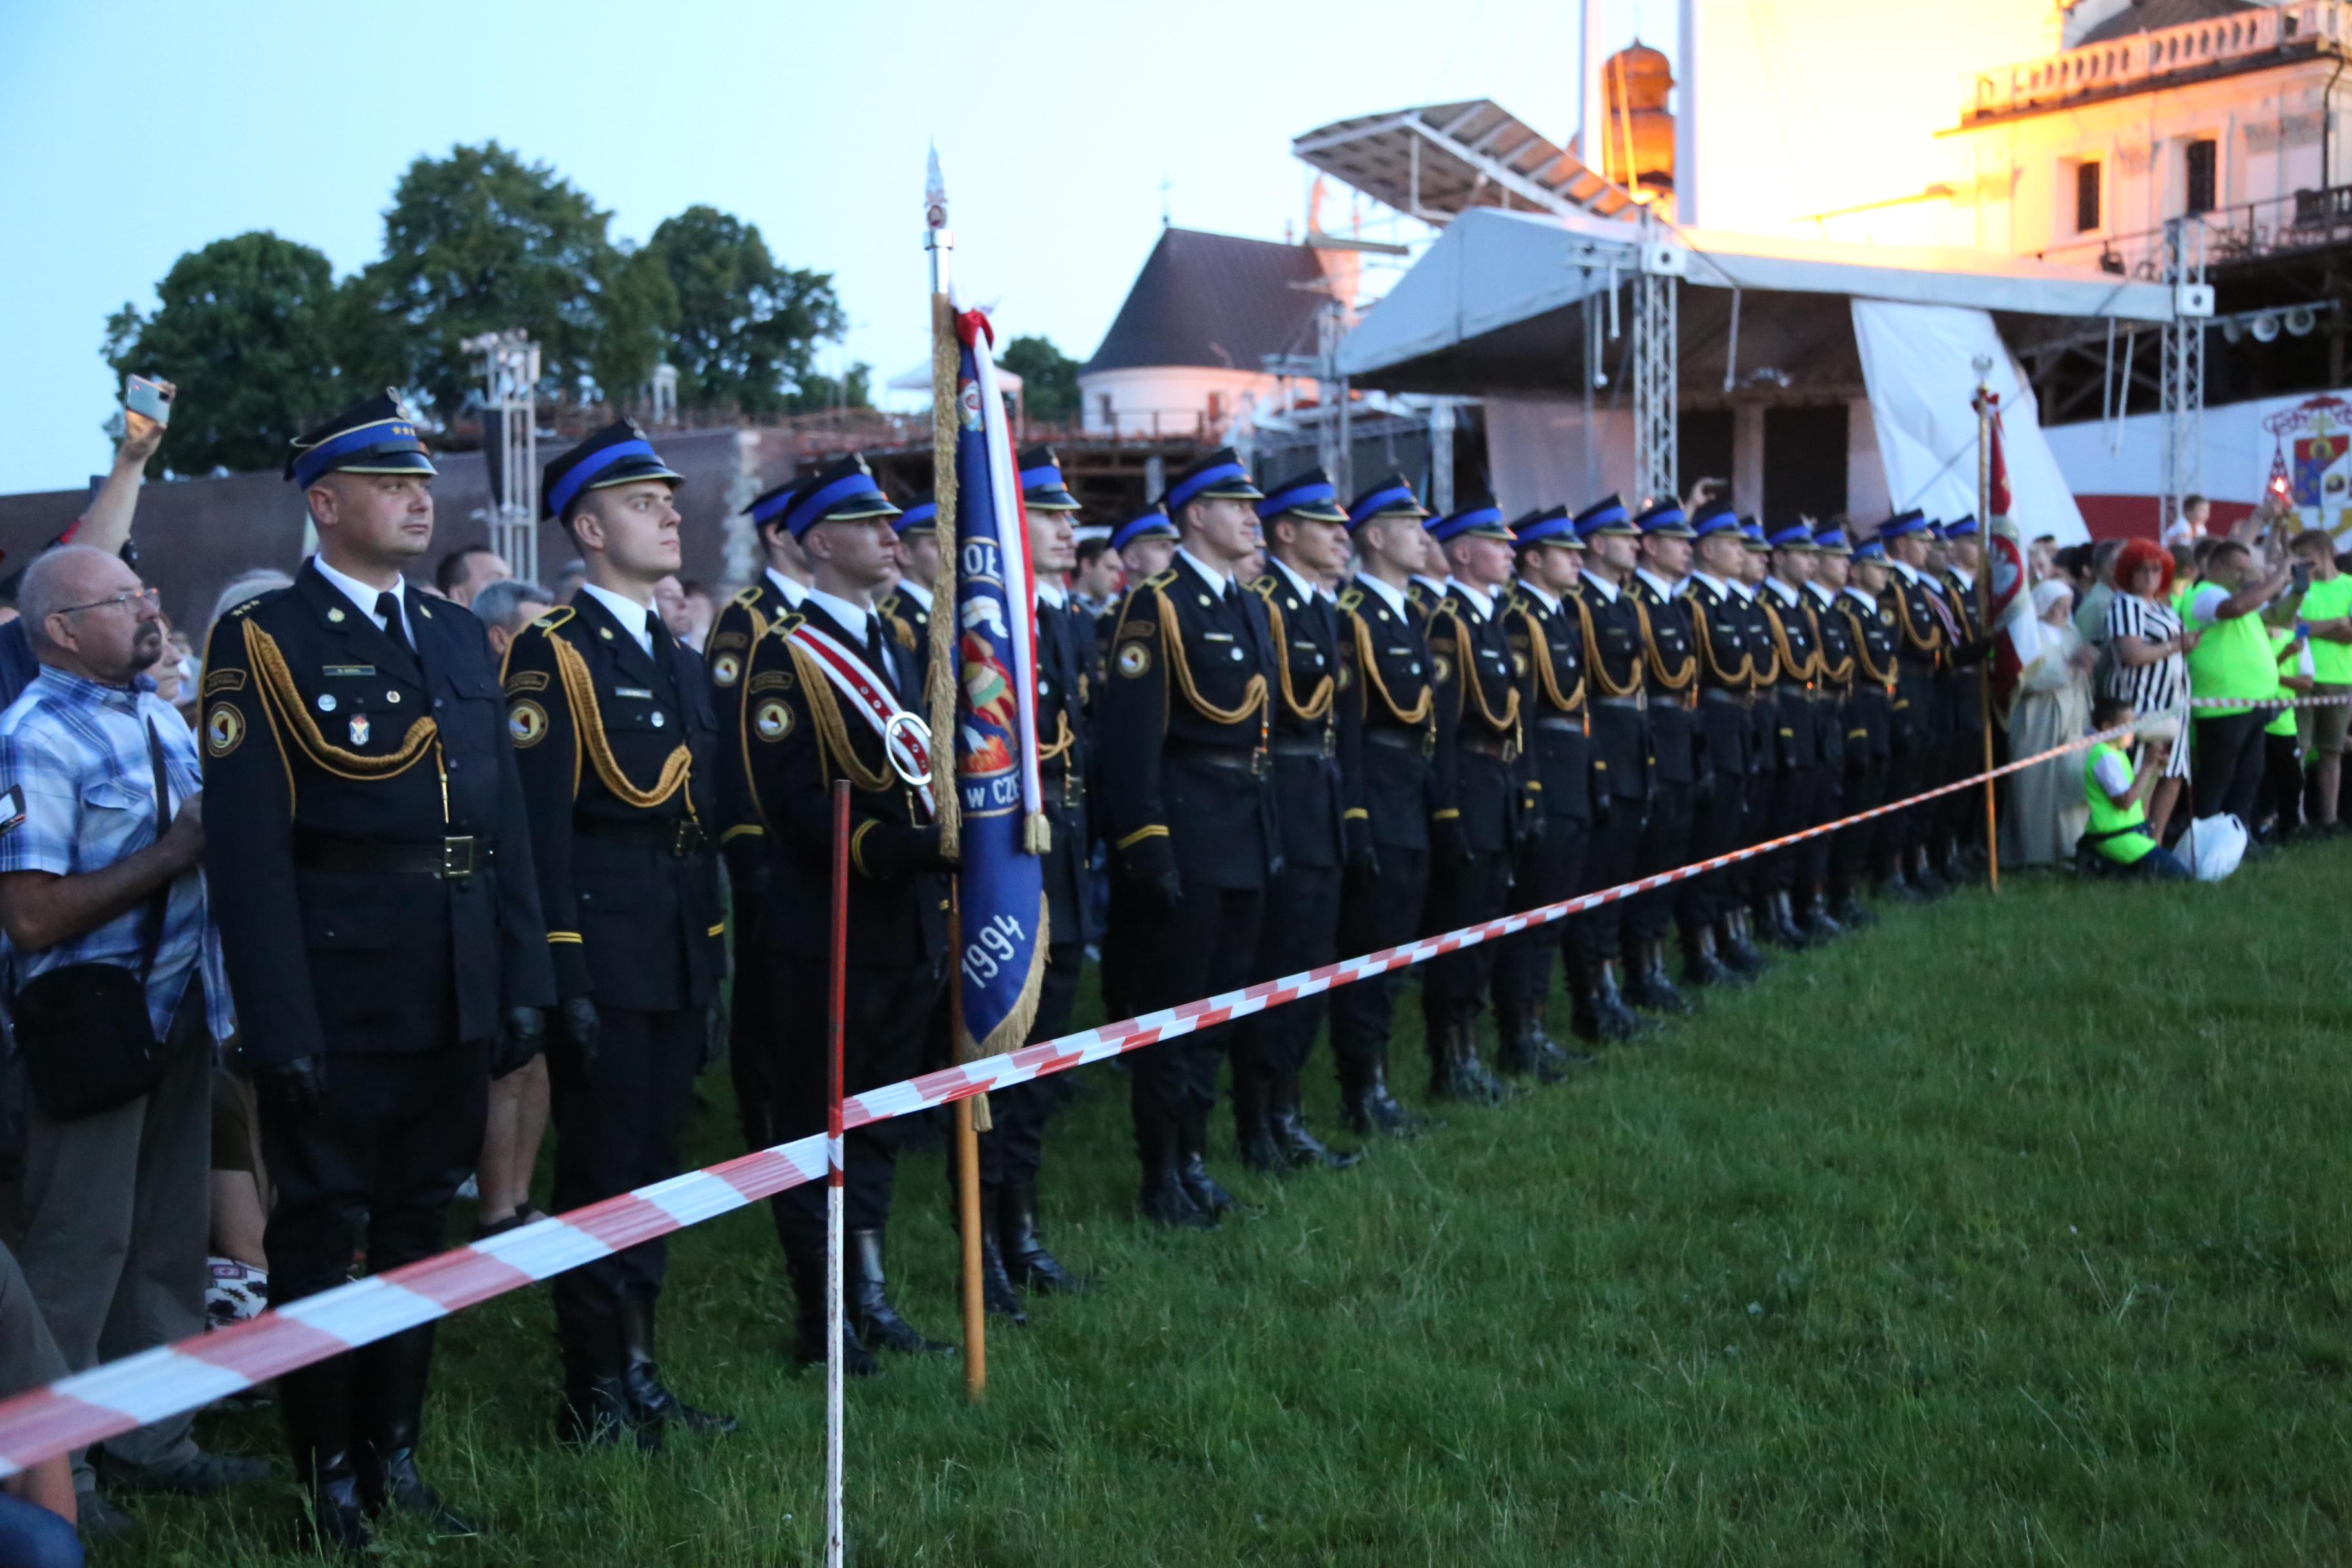 Na Błoniach Jasnogórskich ustawieni w szeregu strażacy wraz ze sztandarem